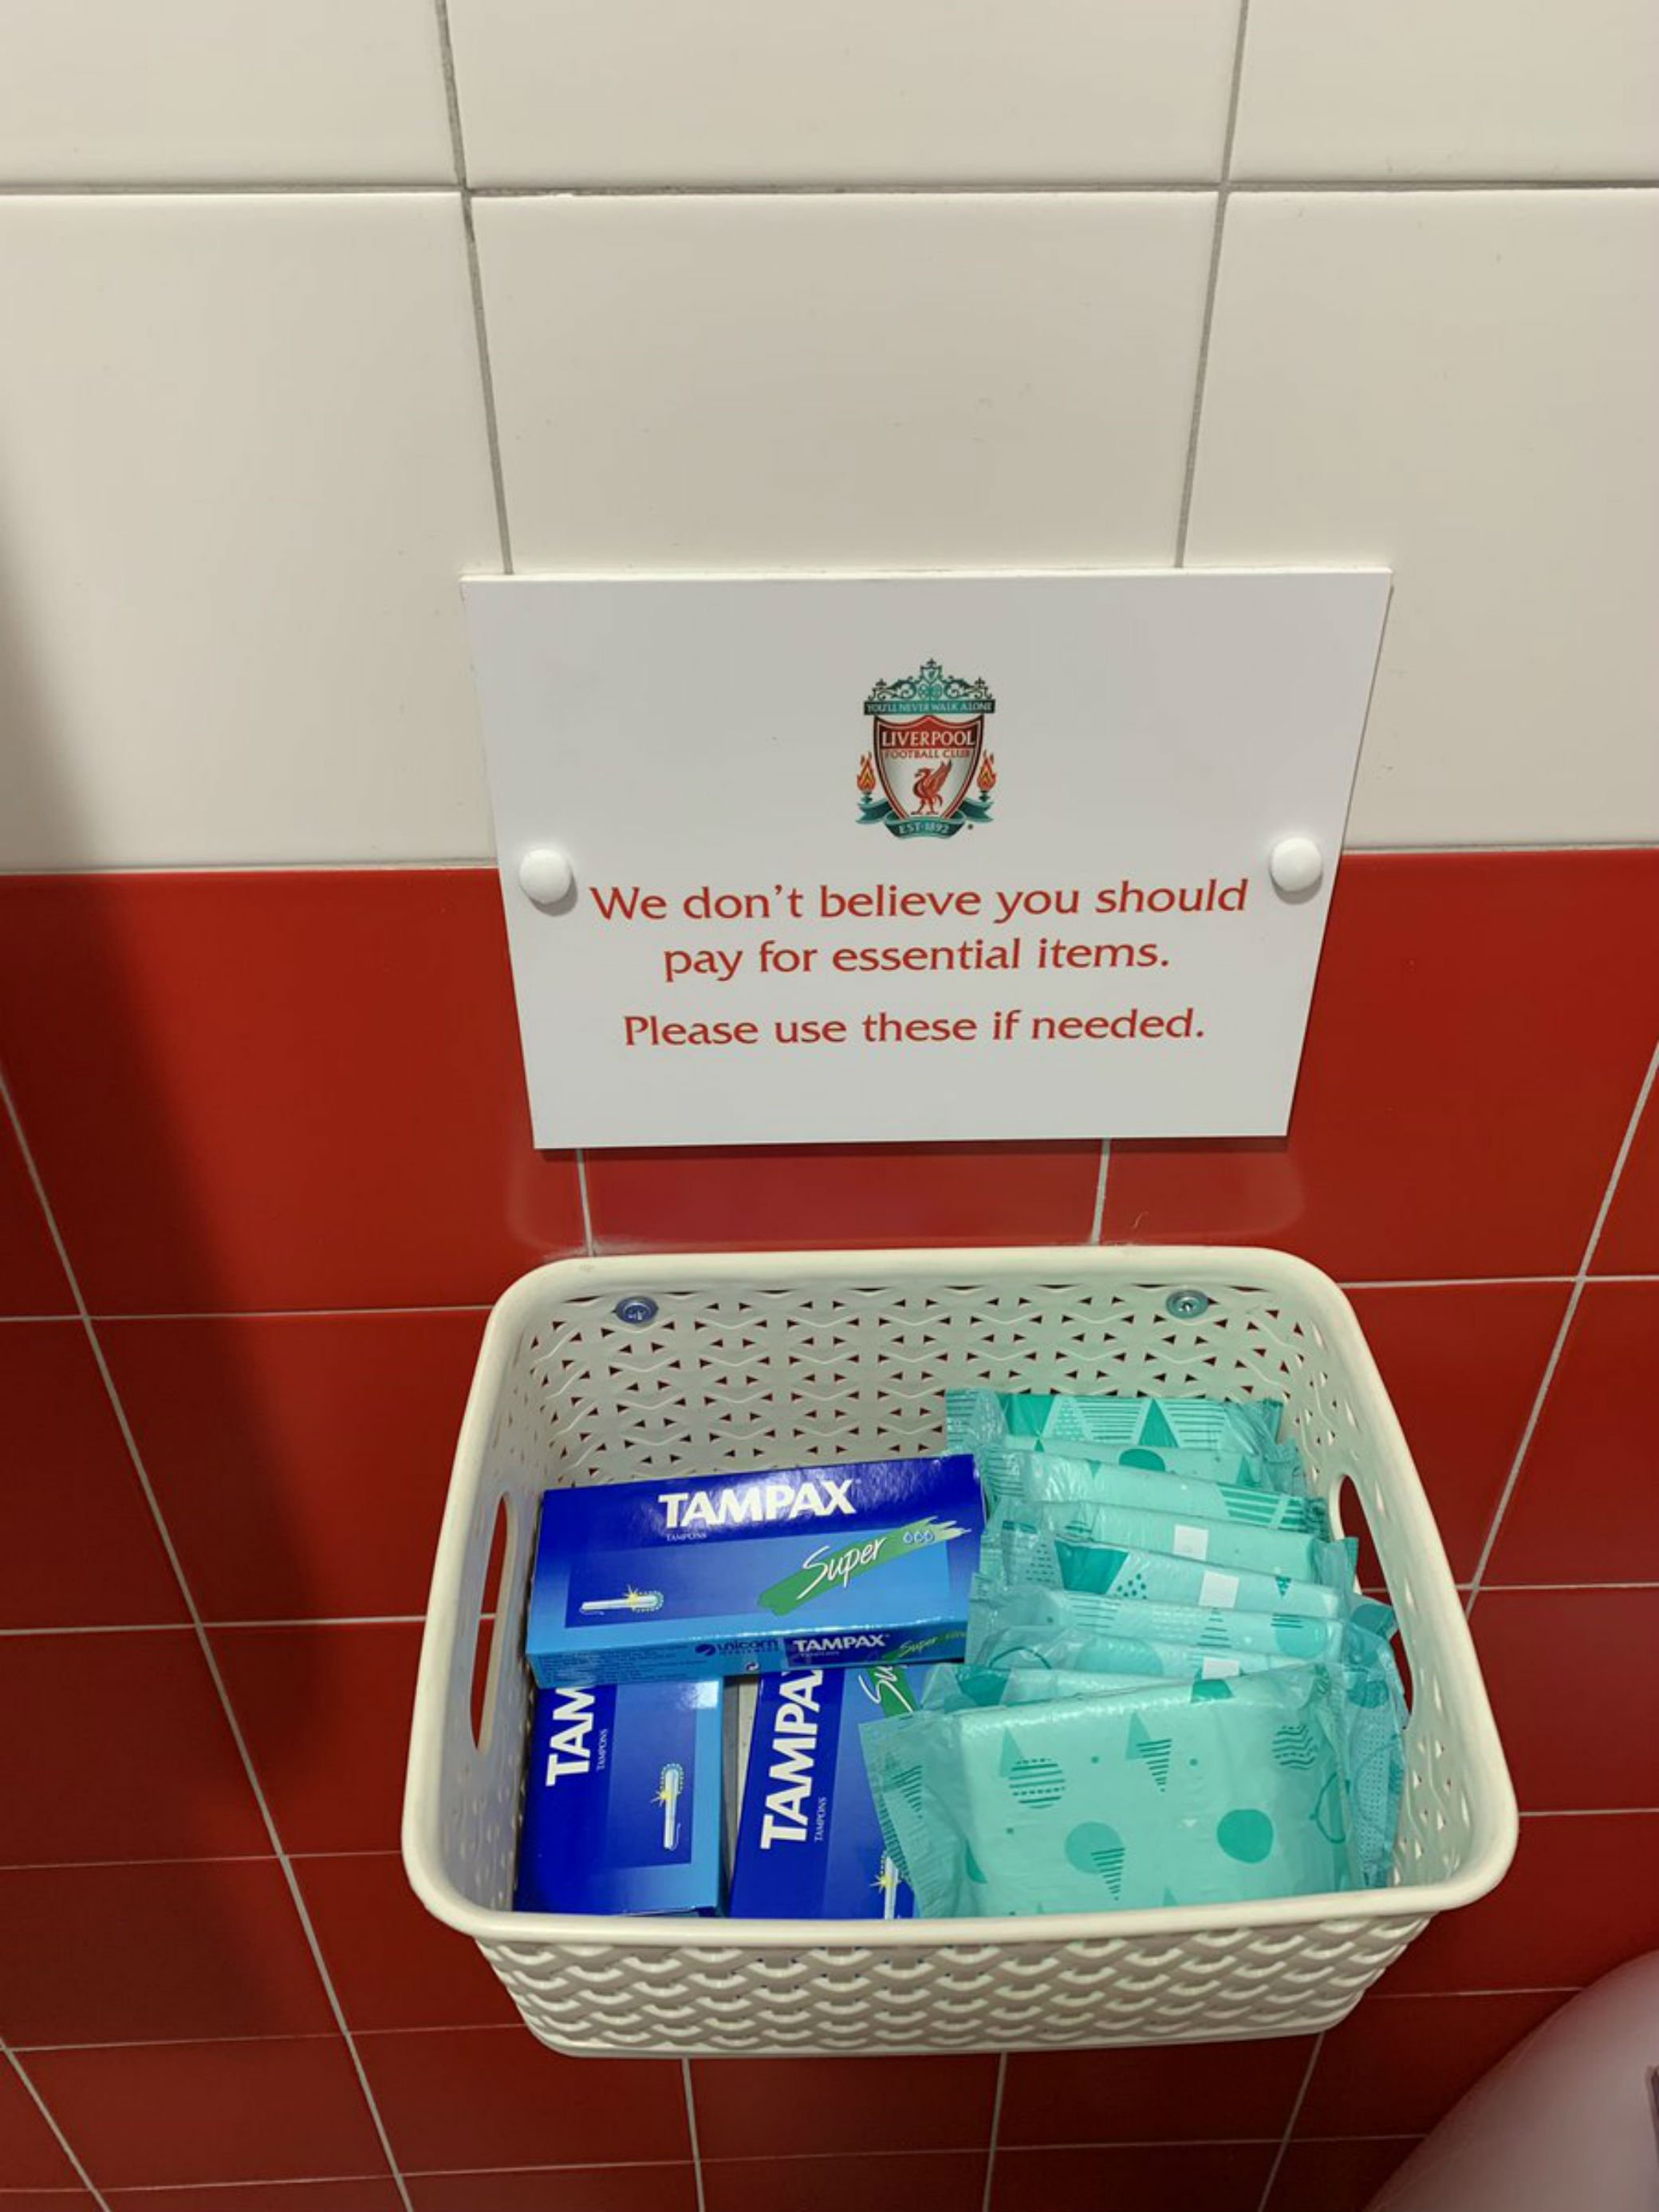 Una demostració d'igualtat: així són els lavabos d'Anfield, l'estadi del Liverpool